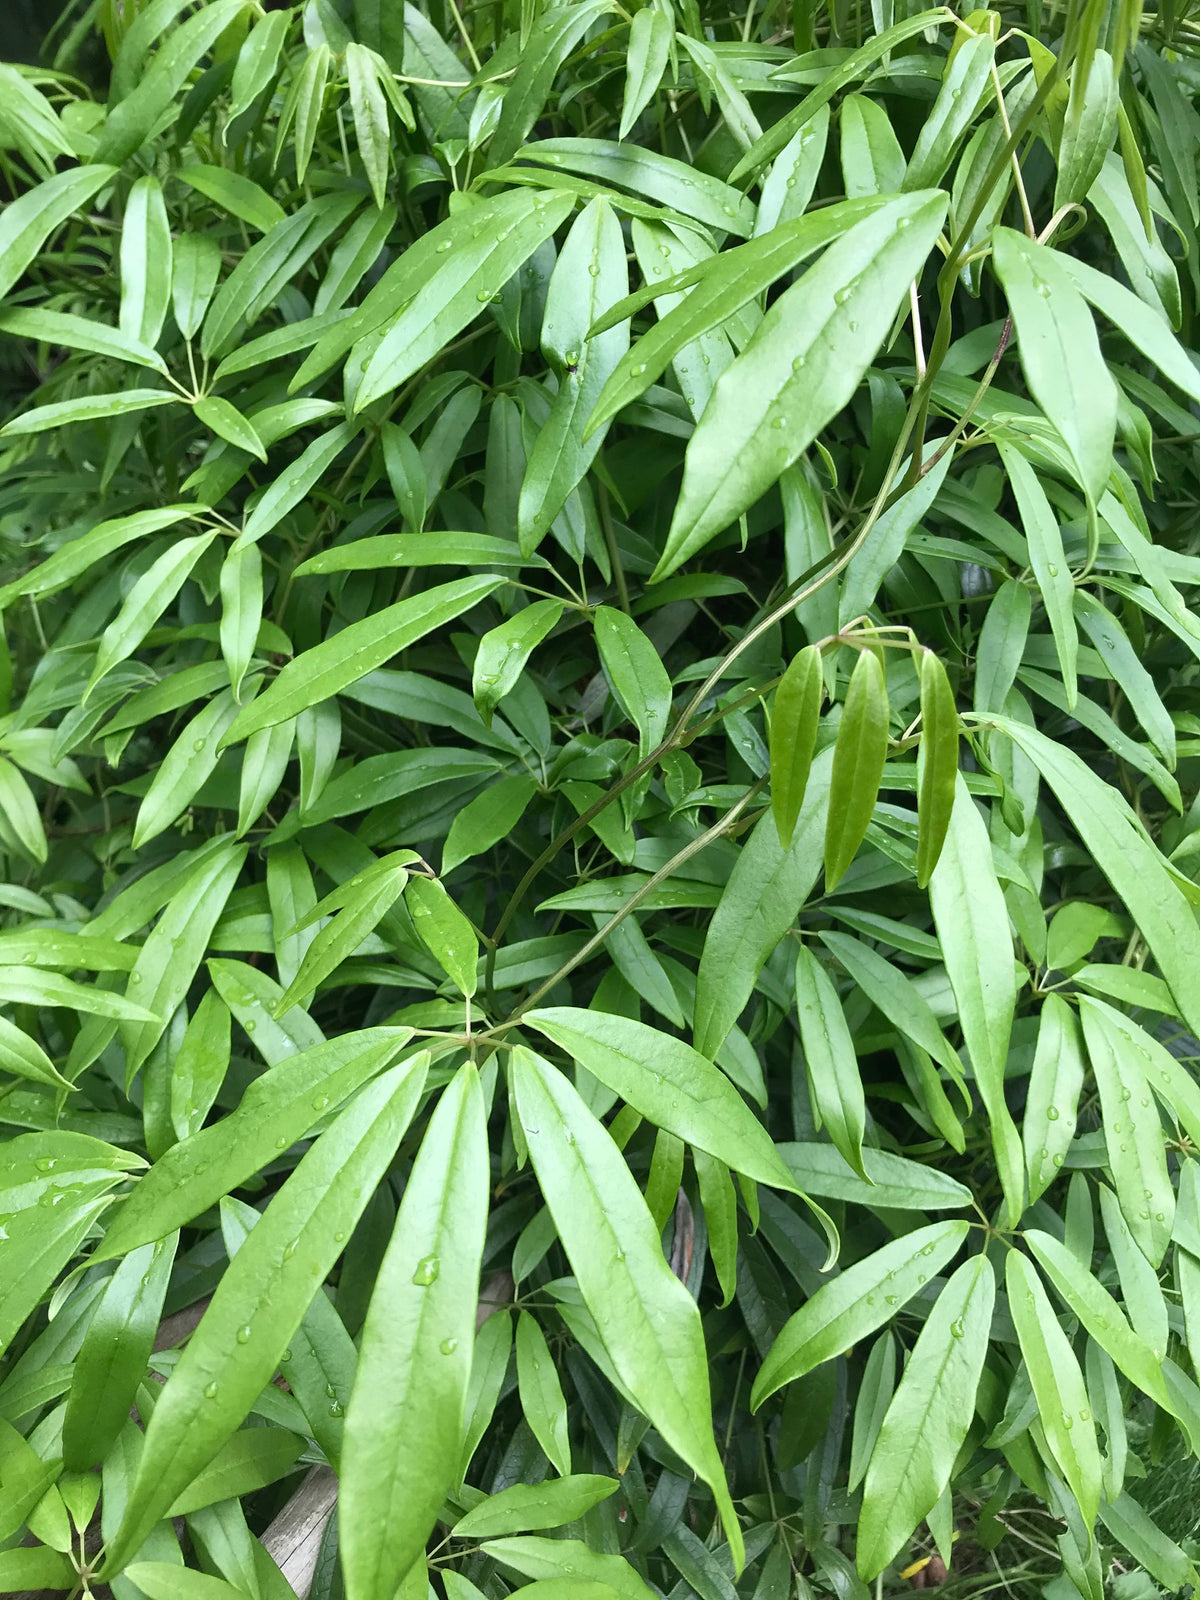 Holboellia angustifolia var. linearifolia (Sausage Vine)